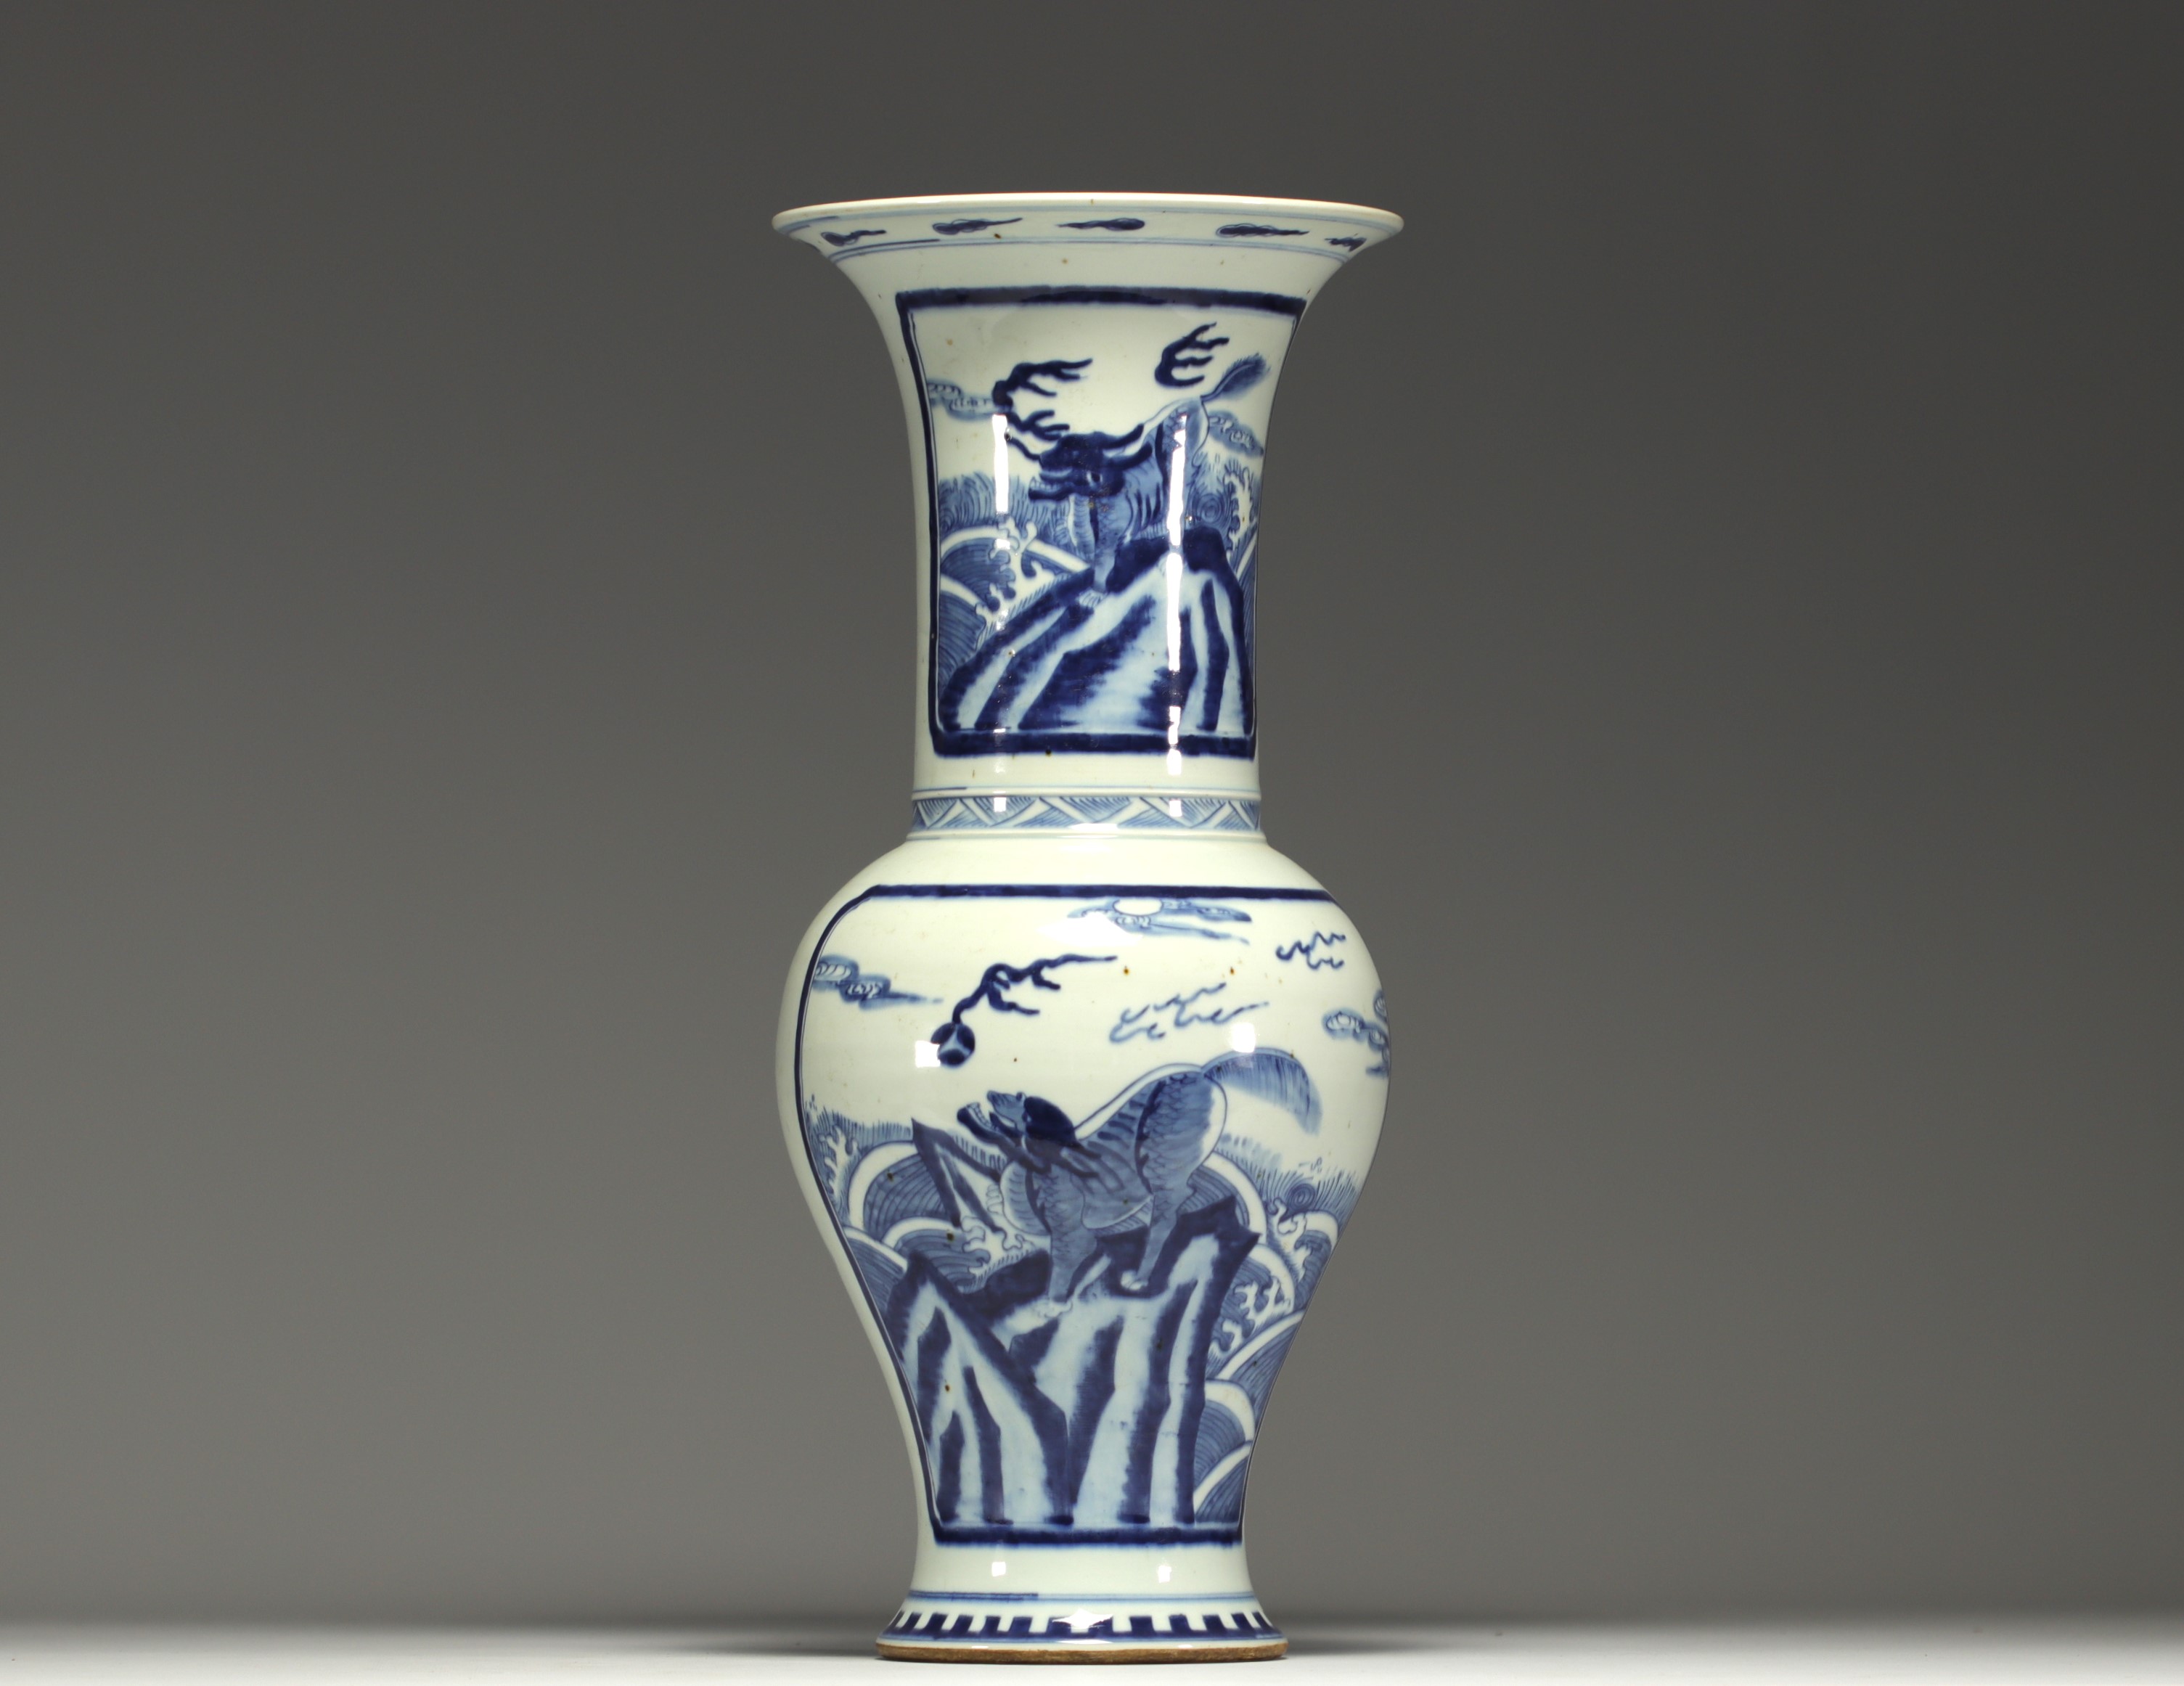 China - Large white-blue vase with chimera design.